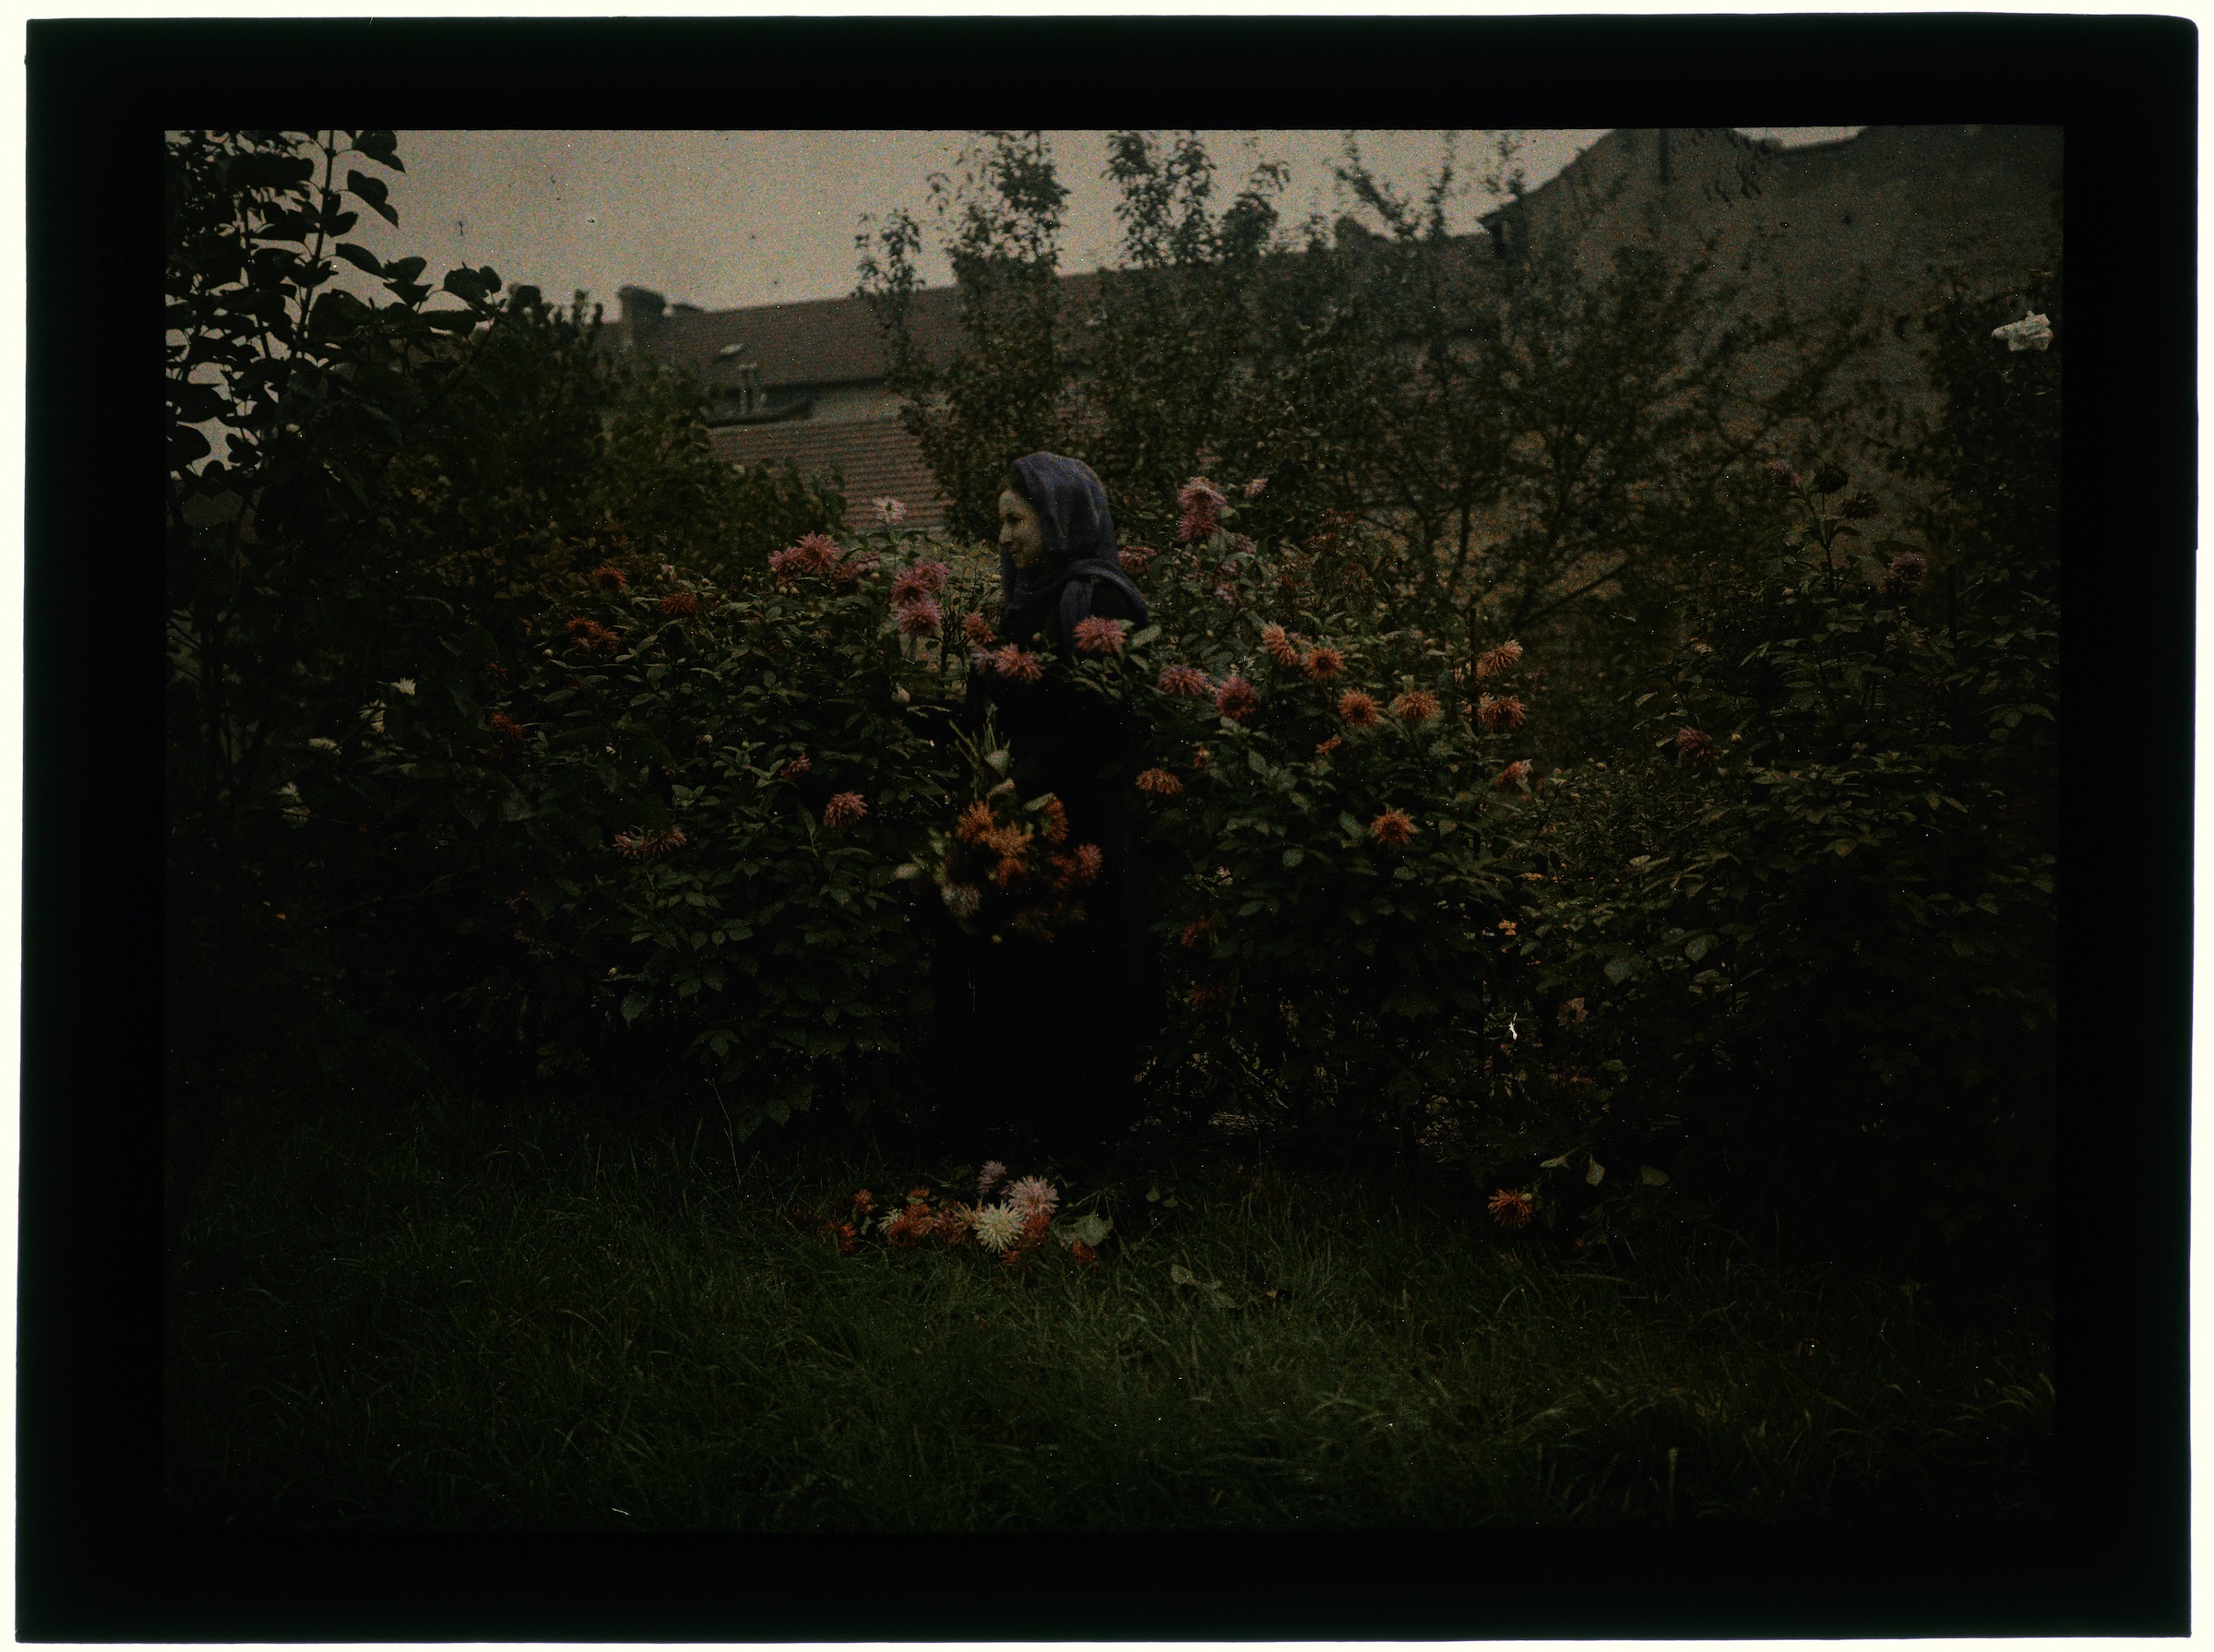 Femme dans le verger avec arbres en fleurs